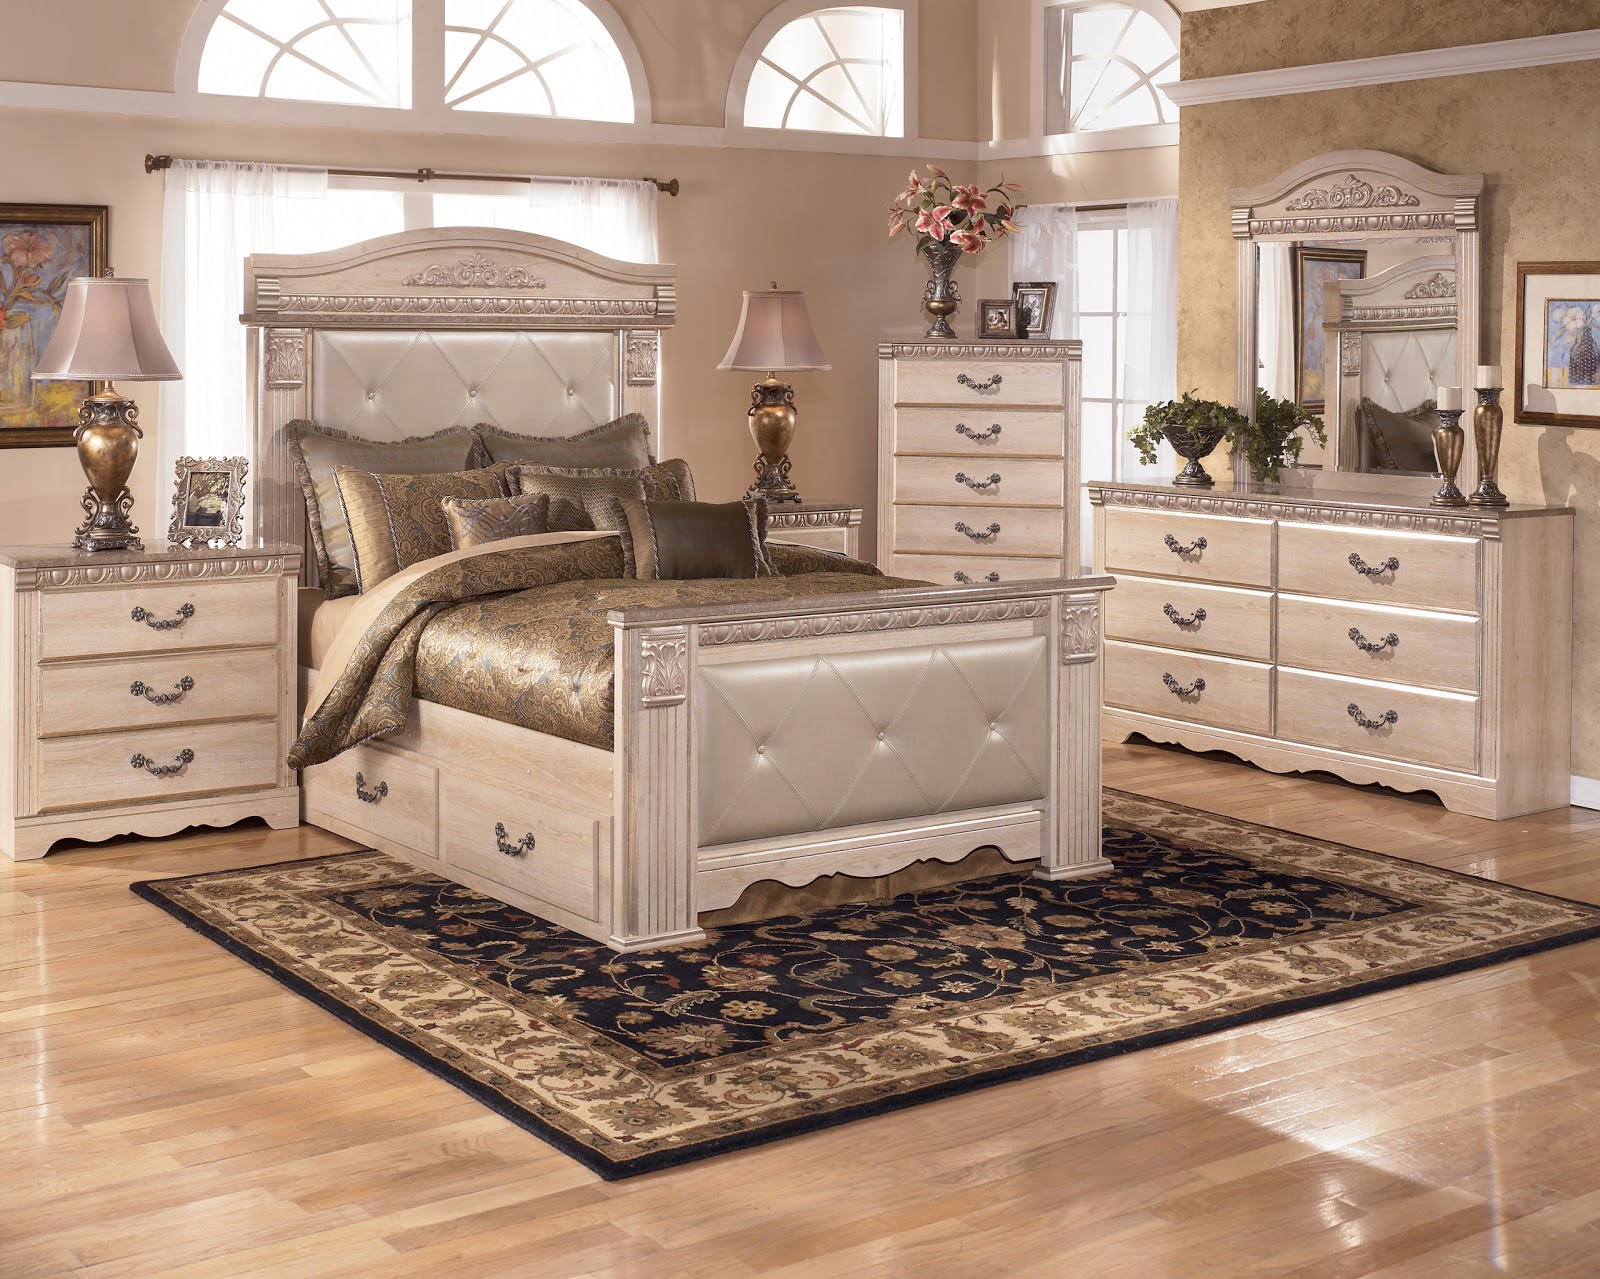 Furniture mart bedroom sets